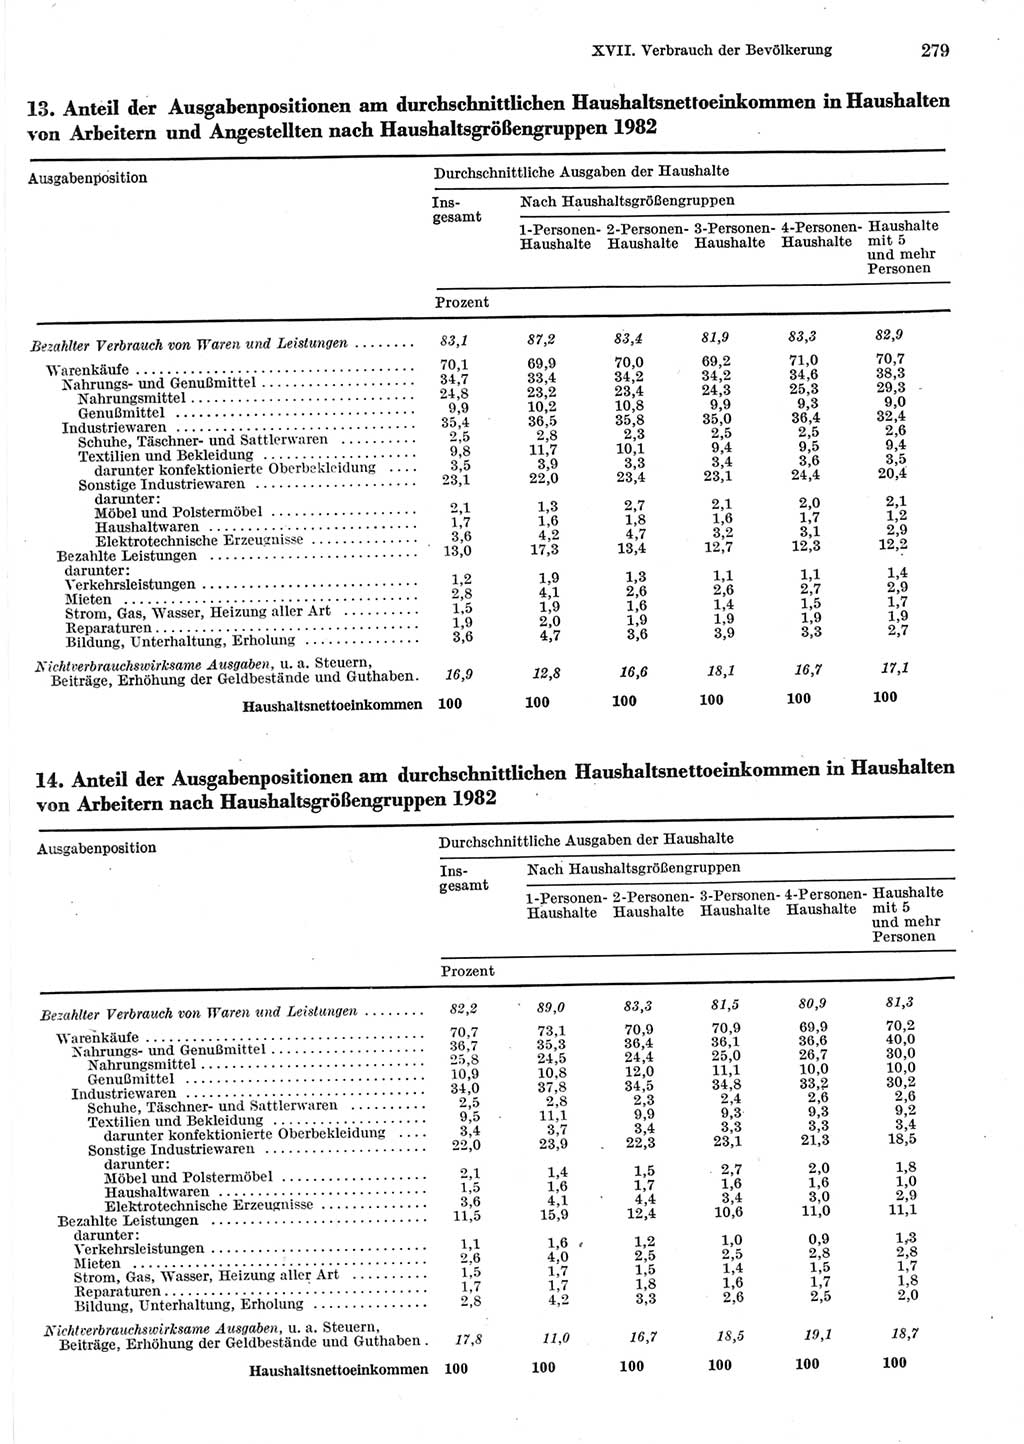 Statistisches Jahrbuch der Deutschen Demokratischen Republik (DDR) 1983, Seite 279 (Stat. Jb. DDR 1983, S. 279)